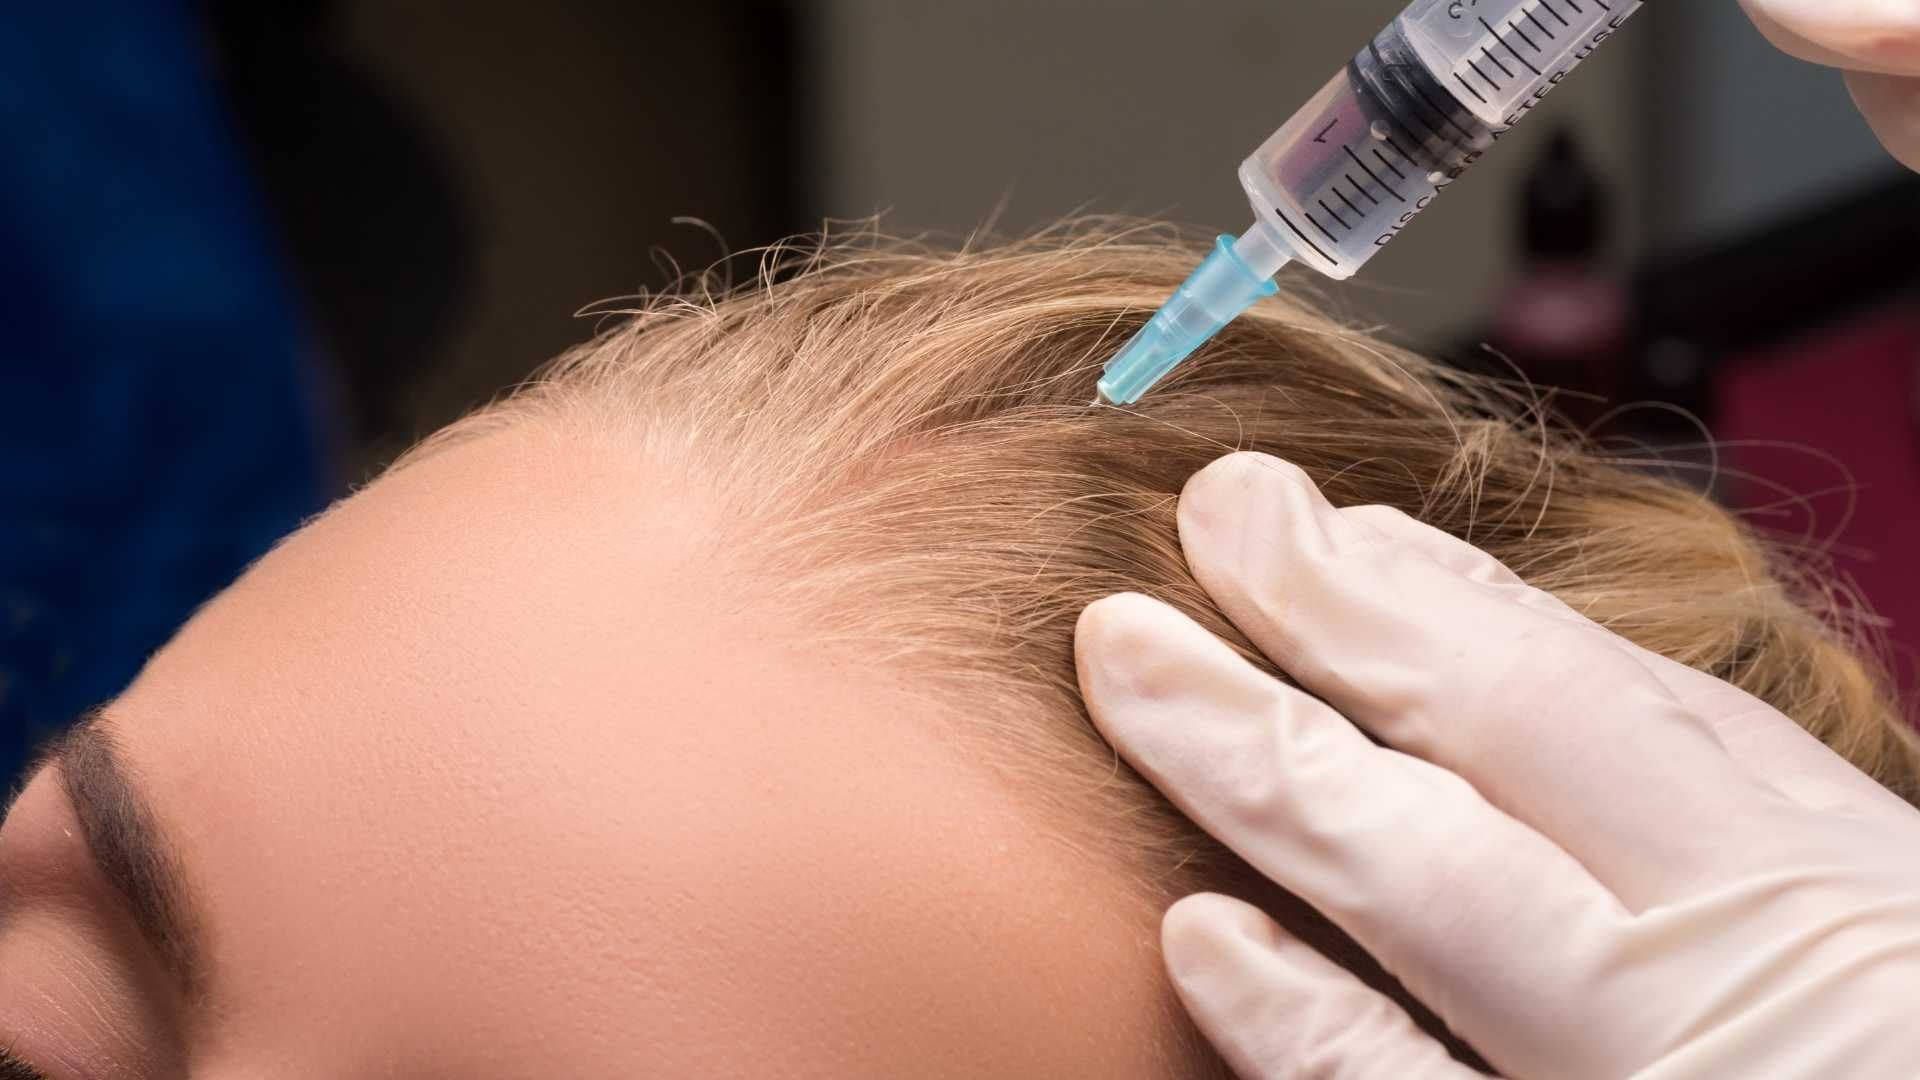 مزوتراپی موی سر با برند فیوژن دکتر شیوا ظهیراعظمی در کرج 1